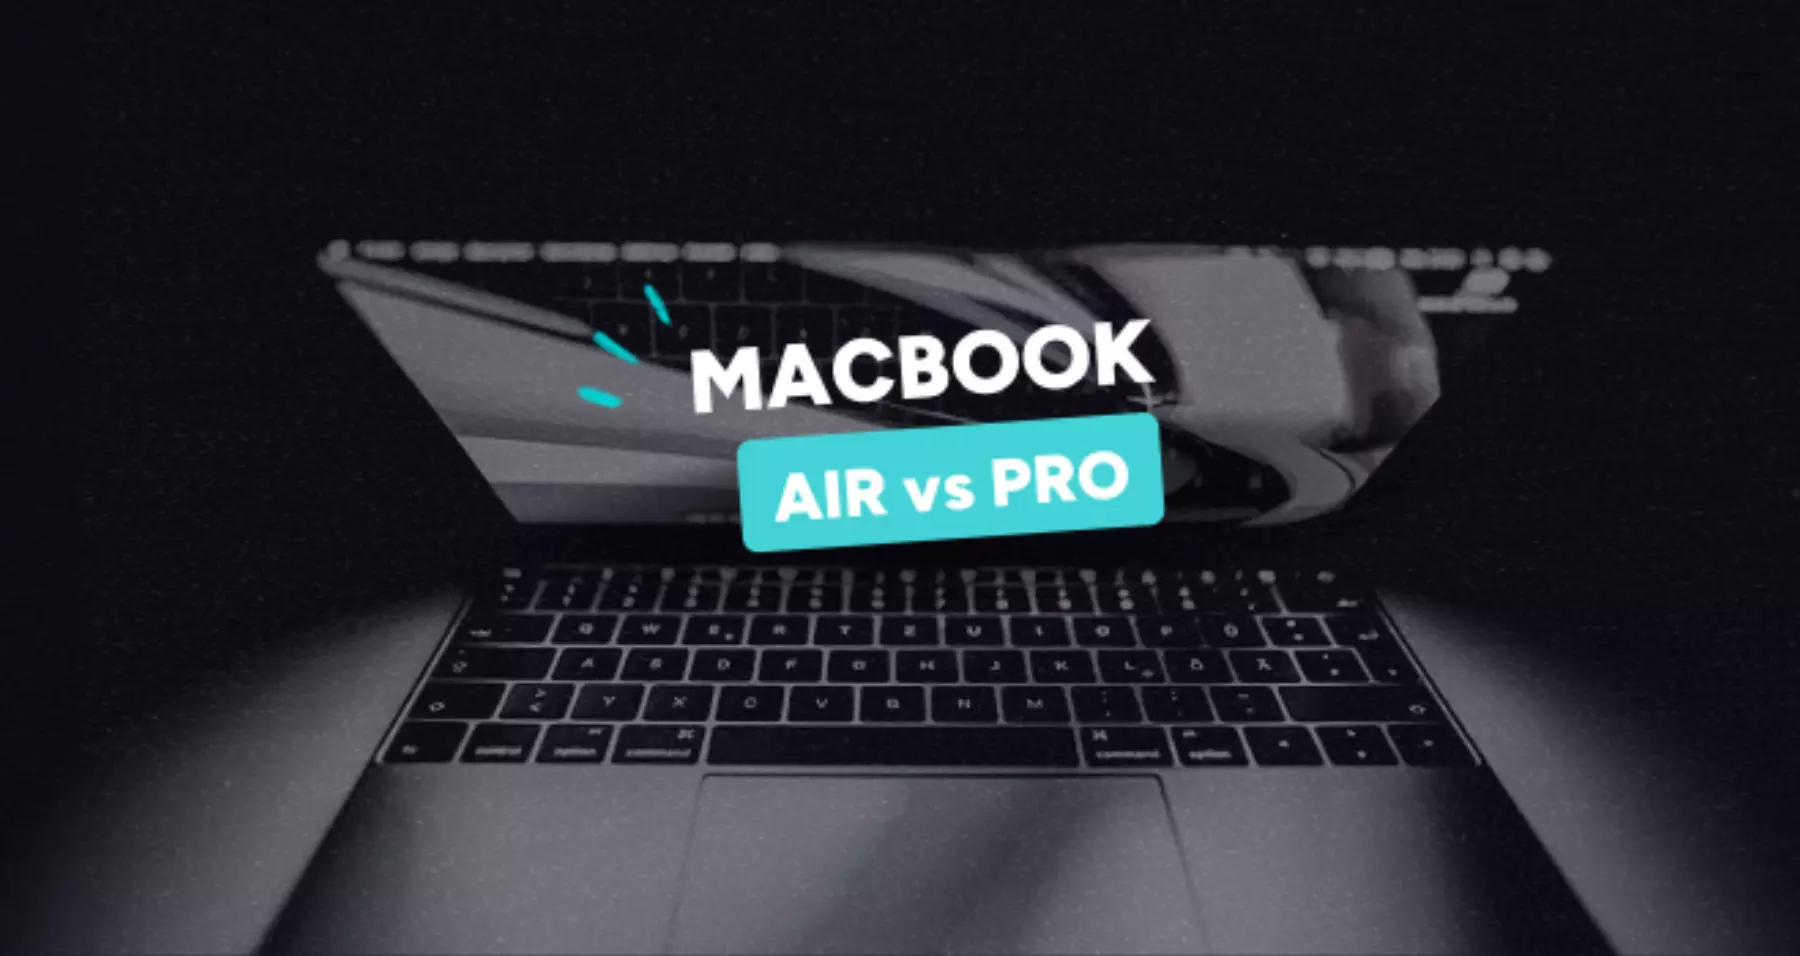 Comment choisir un Mac reconditionné ?